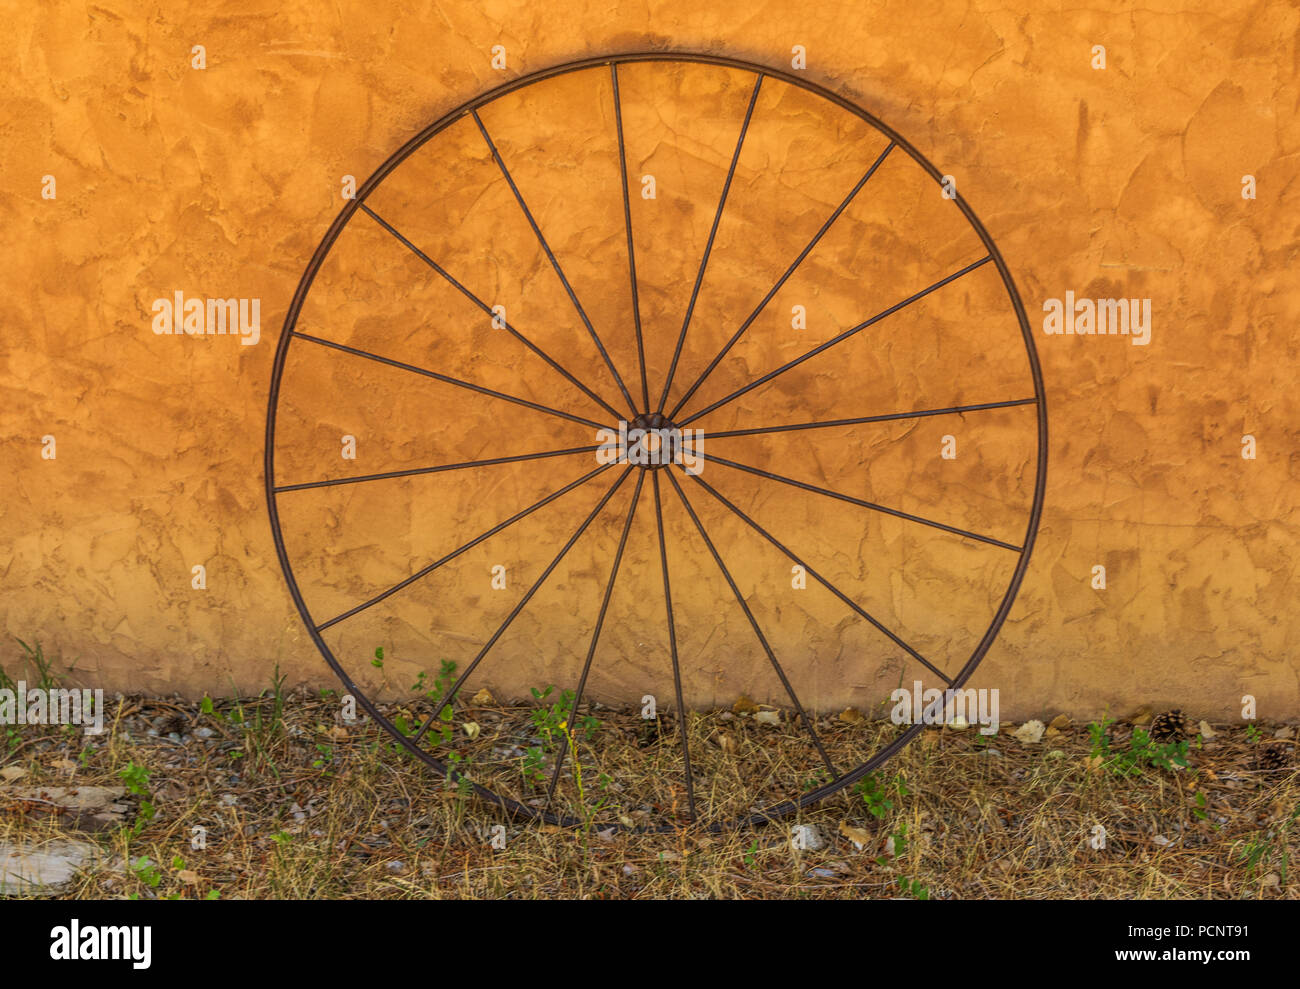 TAOS, NM, USA-8 Juli 18: eine einzige, einfache 16-Speichen wagen Bügeleisen wagon wheel gegen eine orange Stuck an der Wand lehnt. Stockfoto